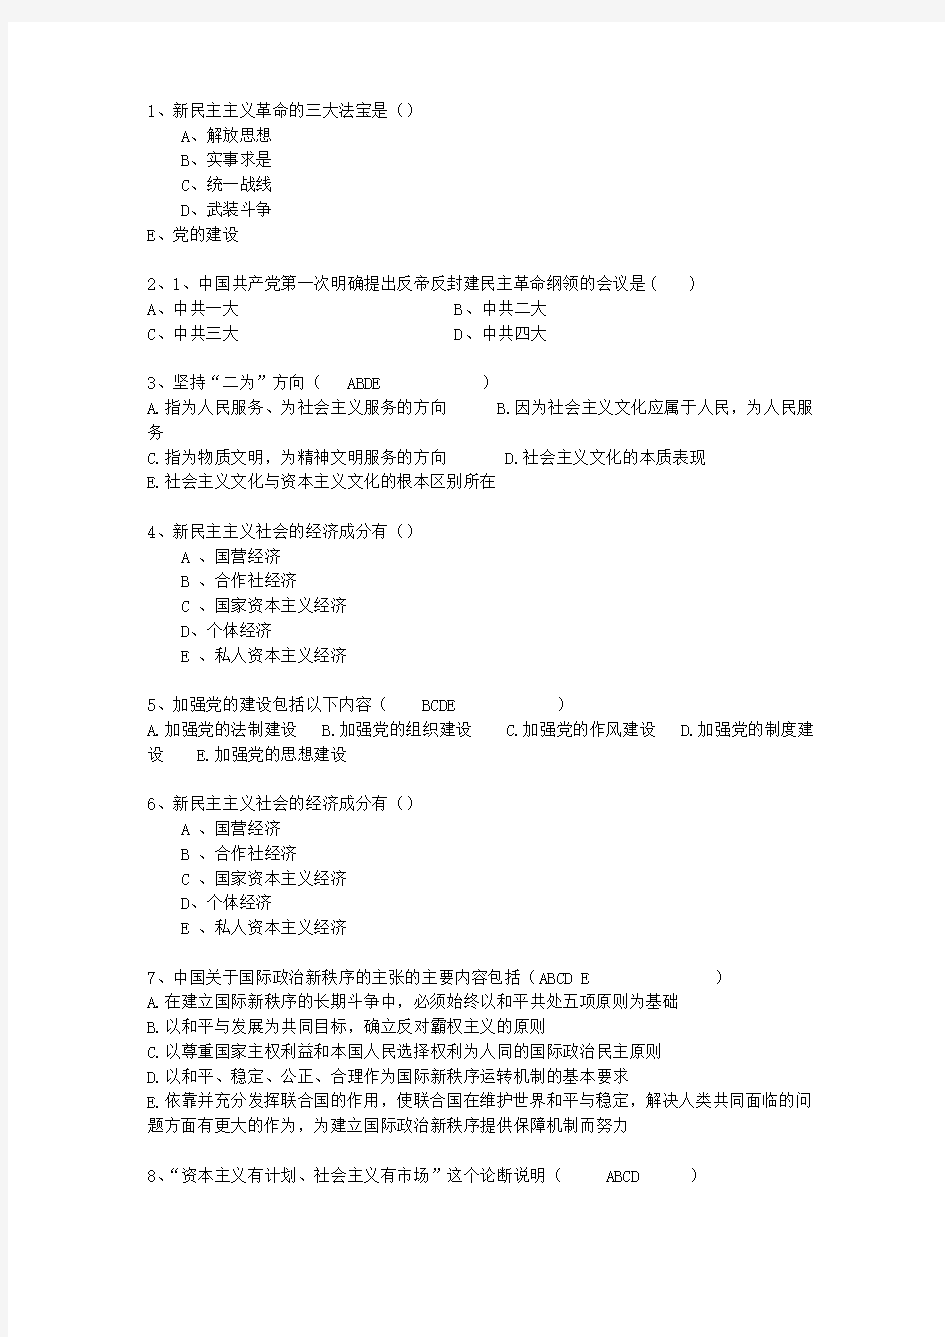 2010江西省毛概经典复习资料最新版本图文